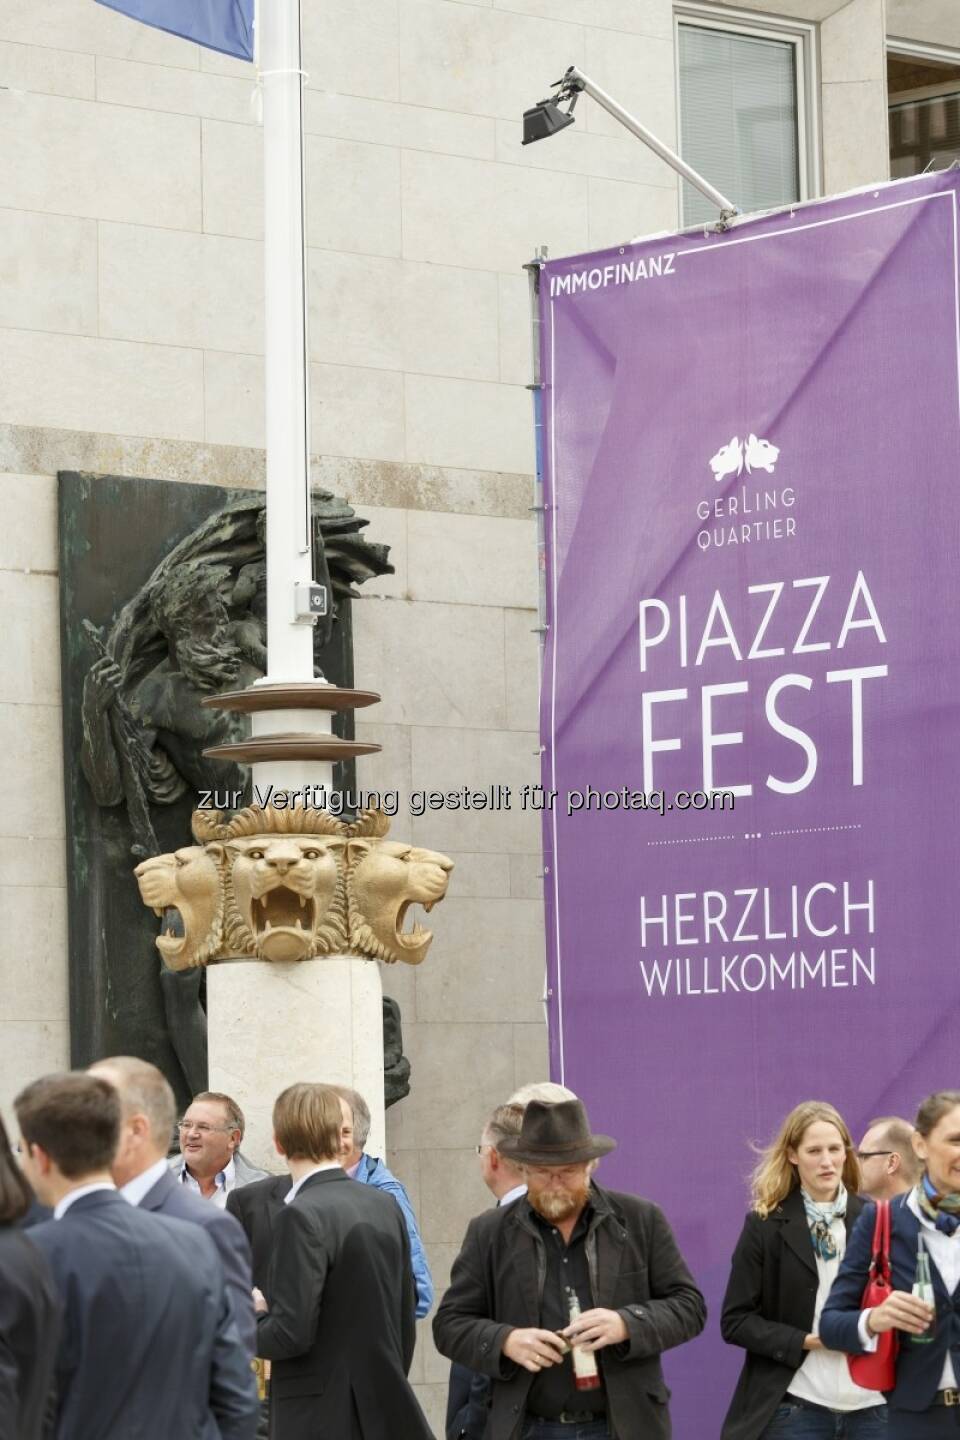 Herzlich Willkommen zum Piazza Fest